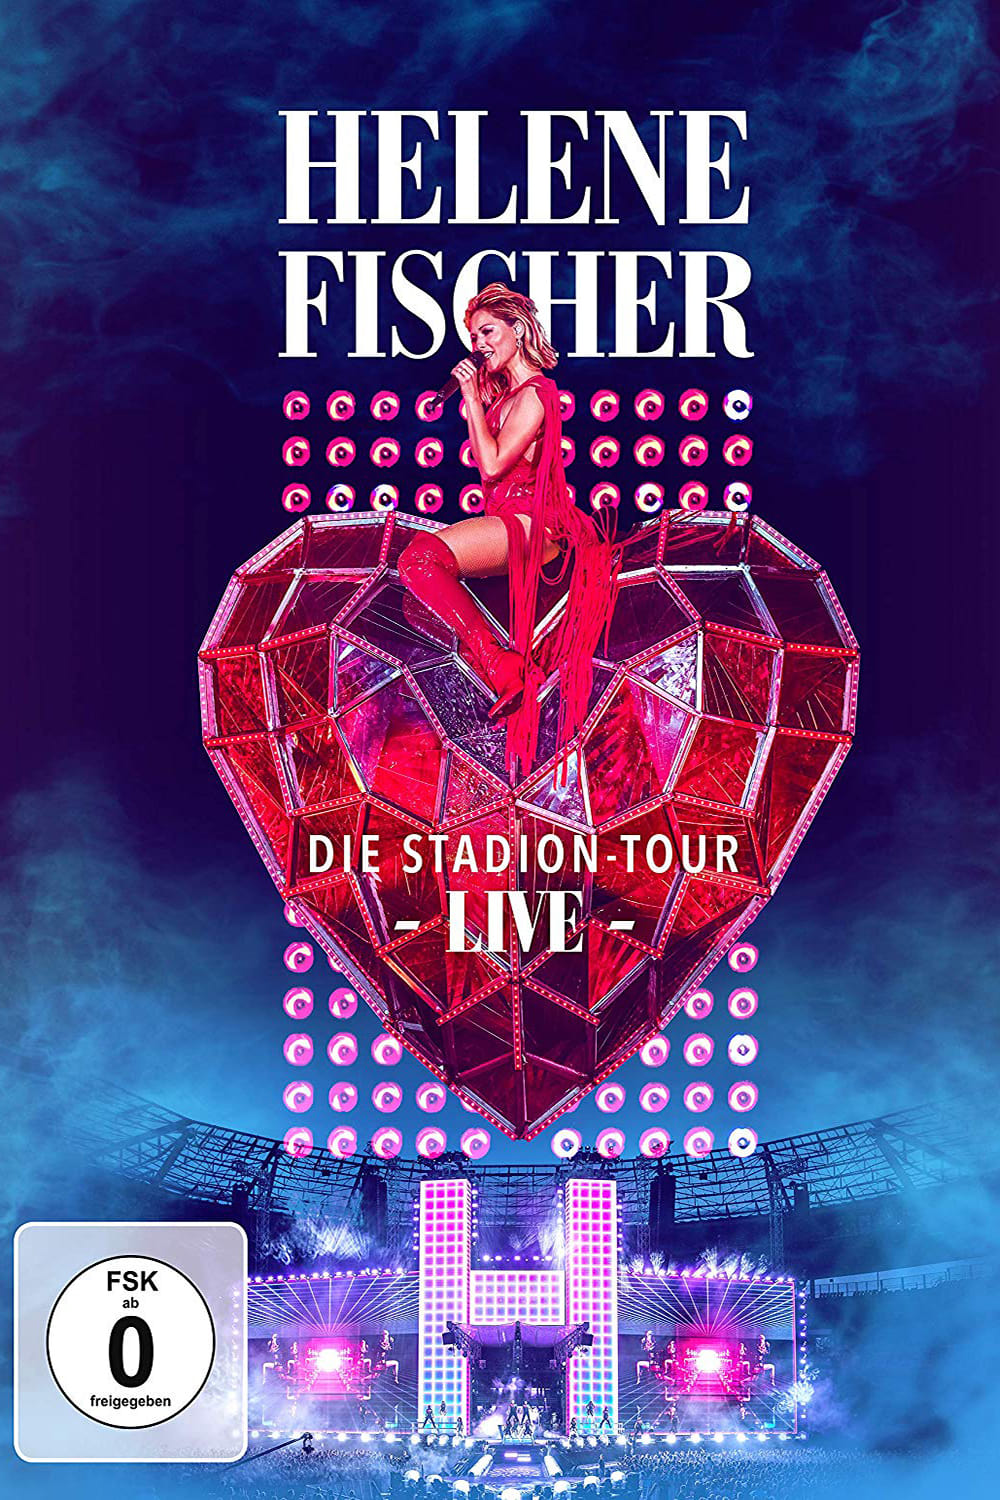 Helene Fischer Live – Die Stadion-Tour